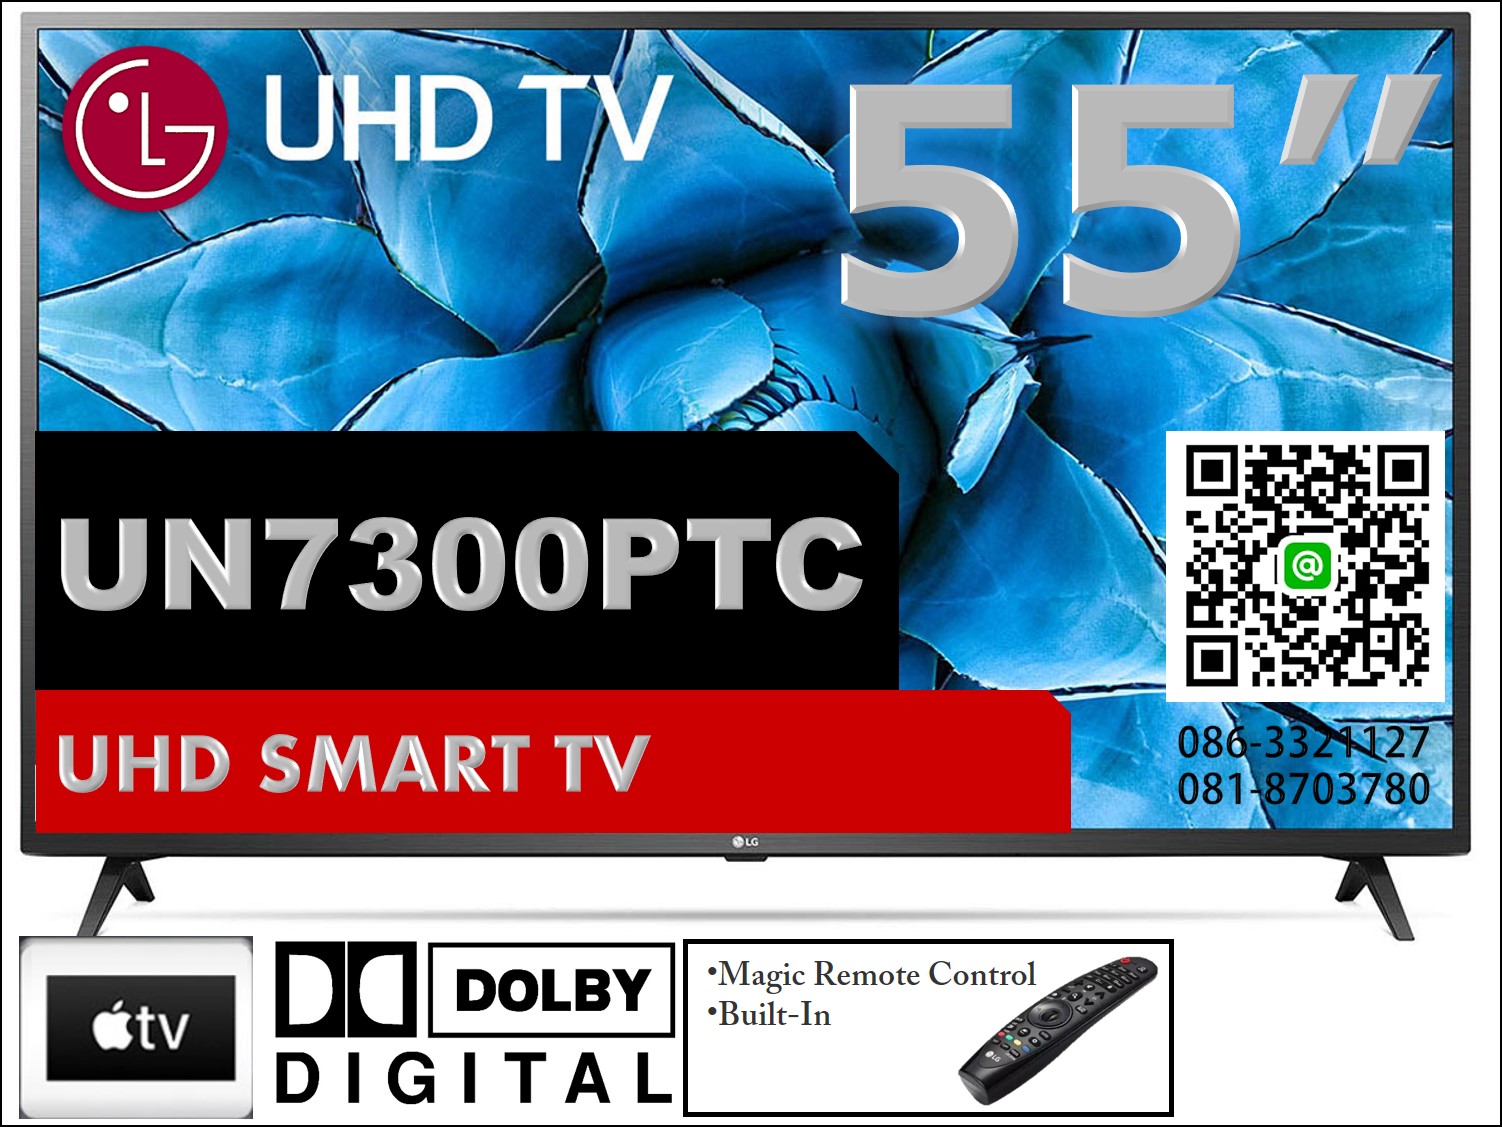 LG 55" UHD SMART TV 55UN7300